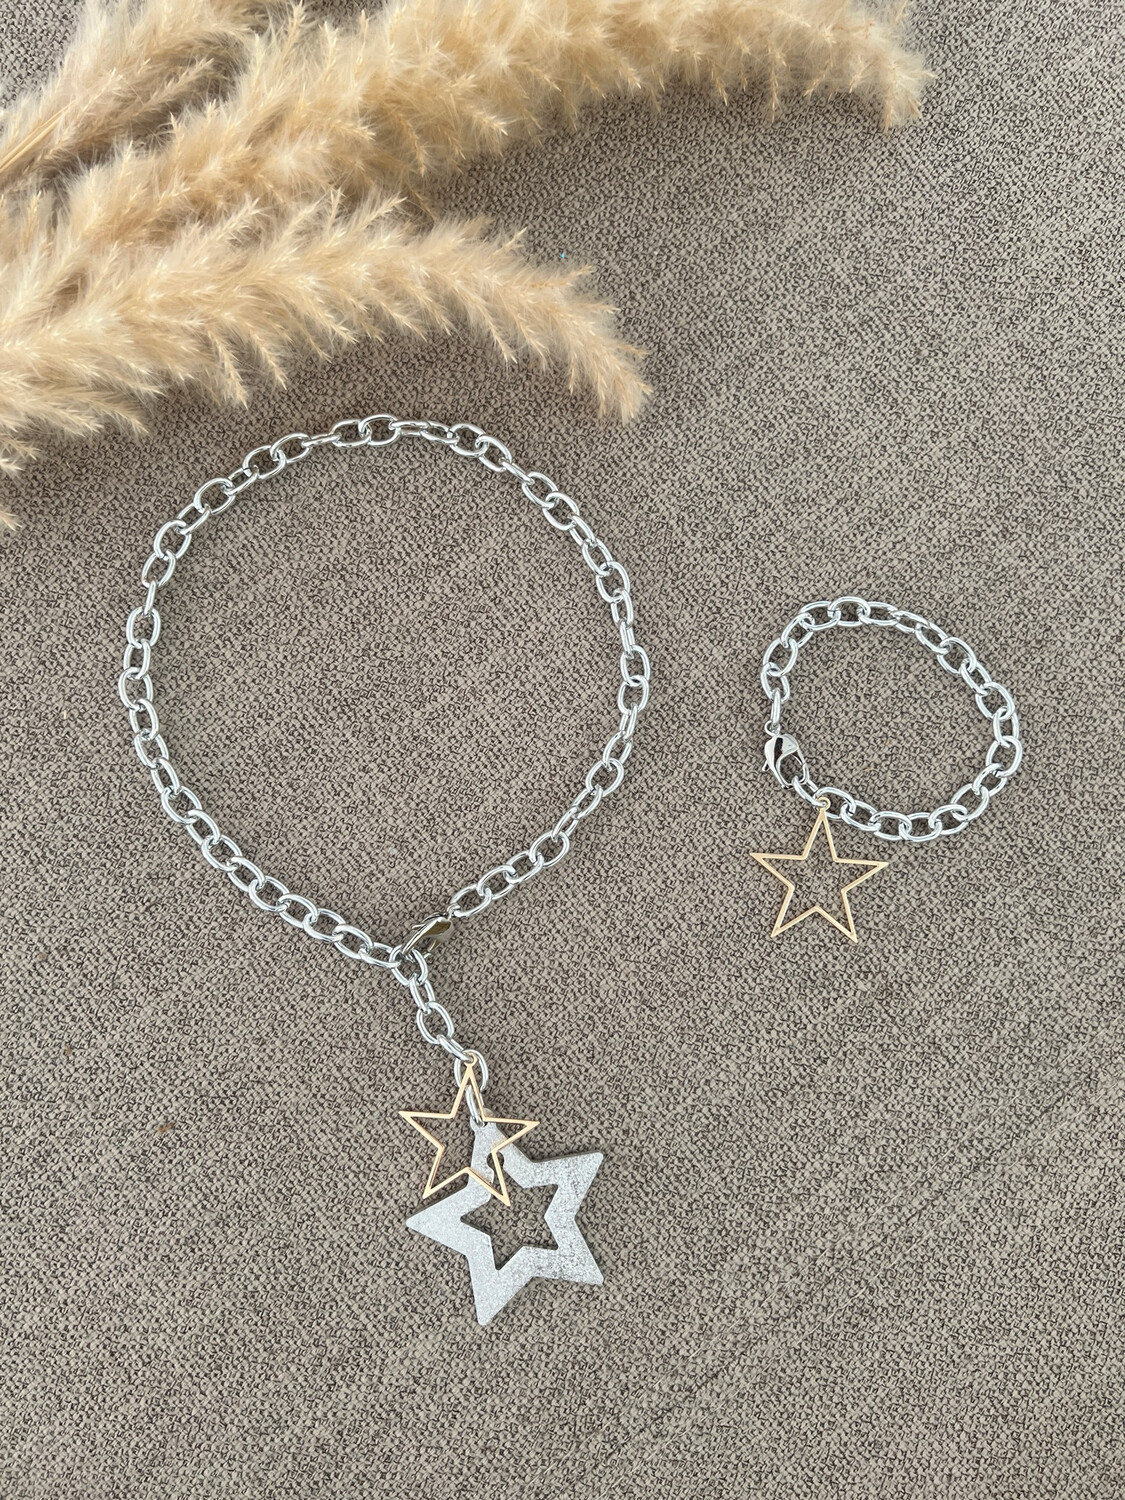 Silver Chain Stars Necklace & Bracelet Set